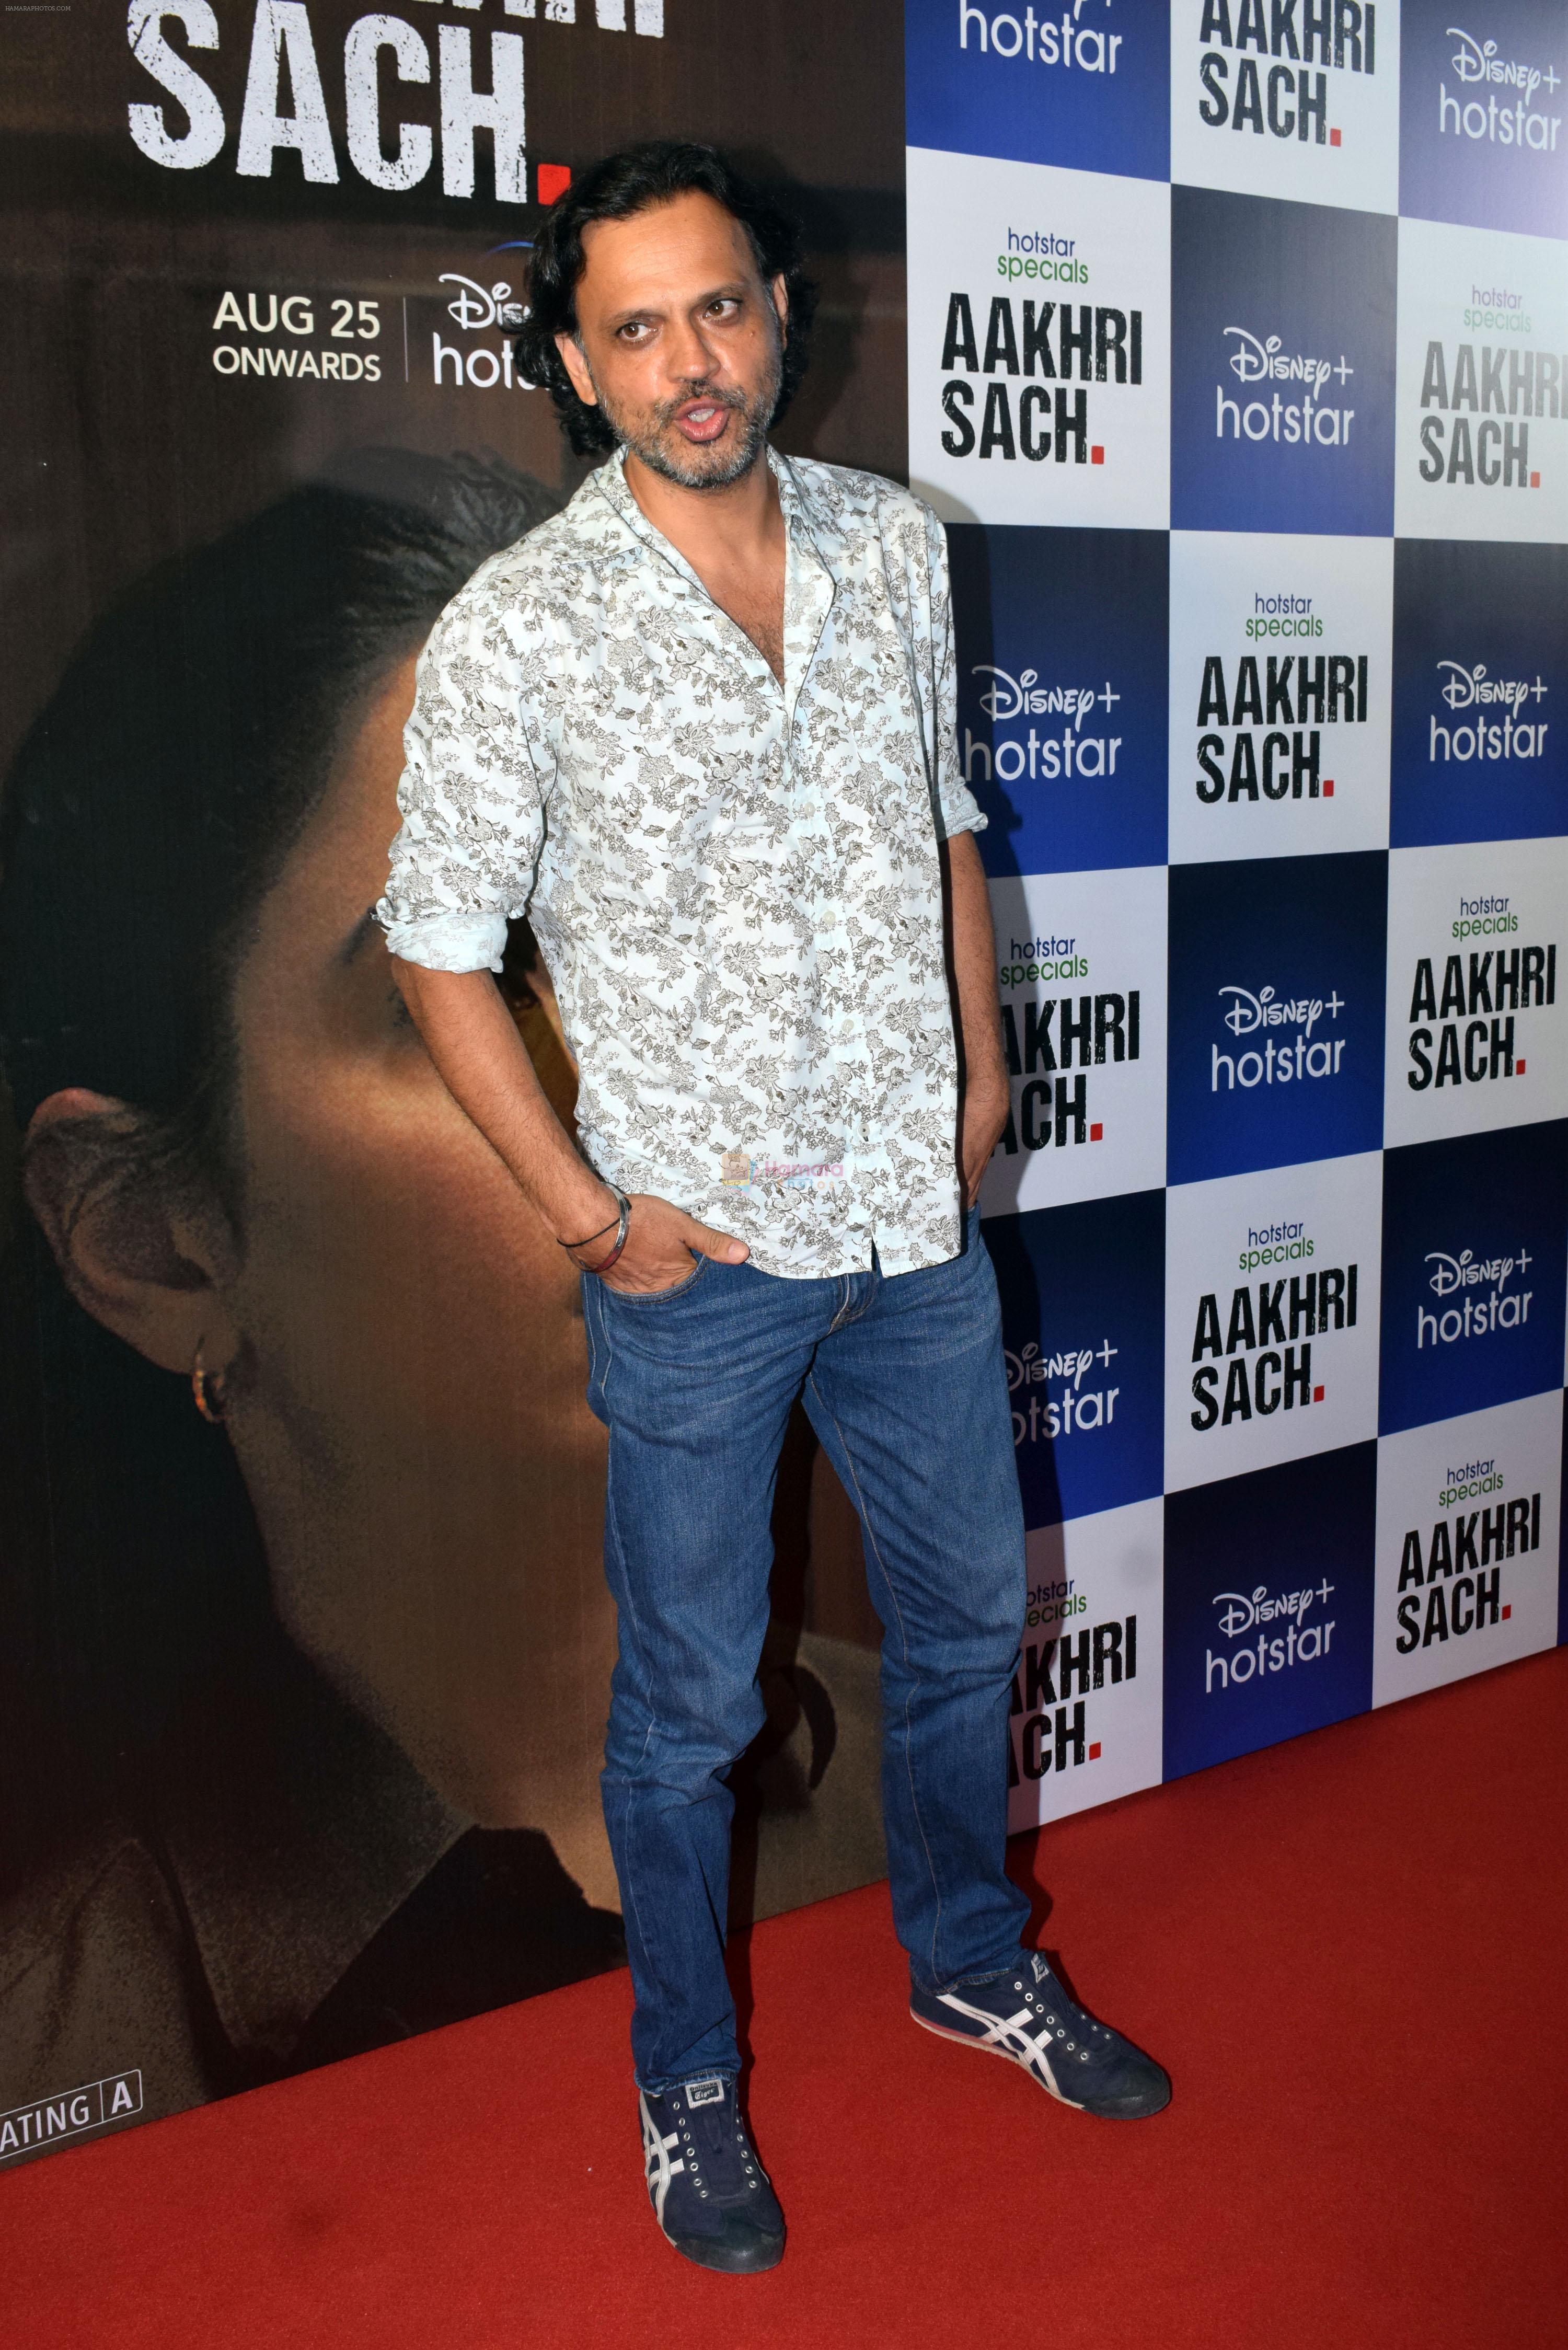 Robbie Grewal at the premiere of Aakhri Sach series